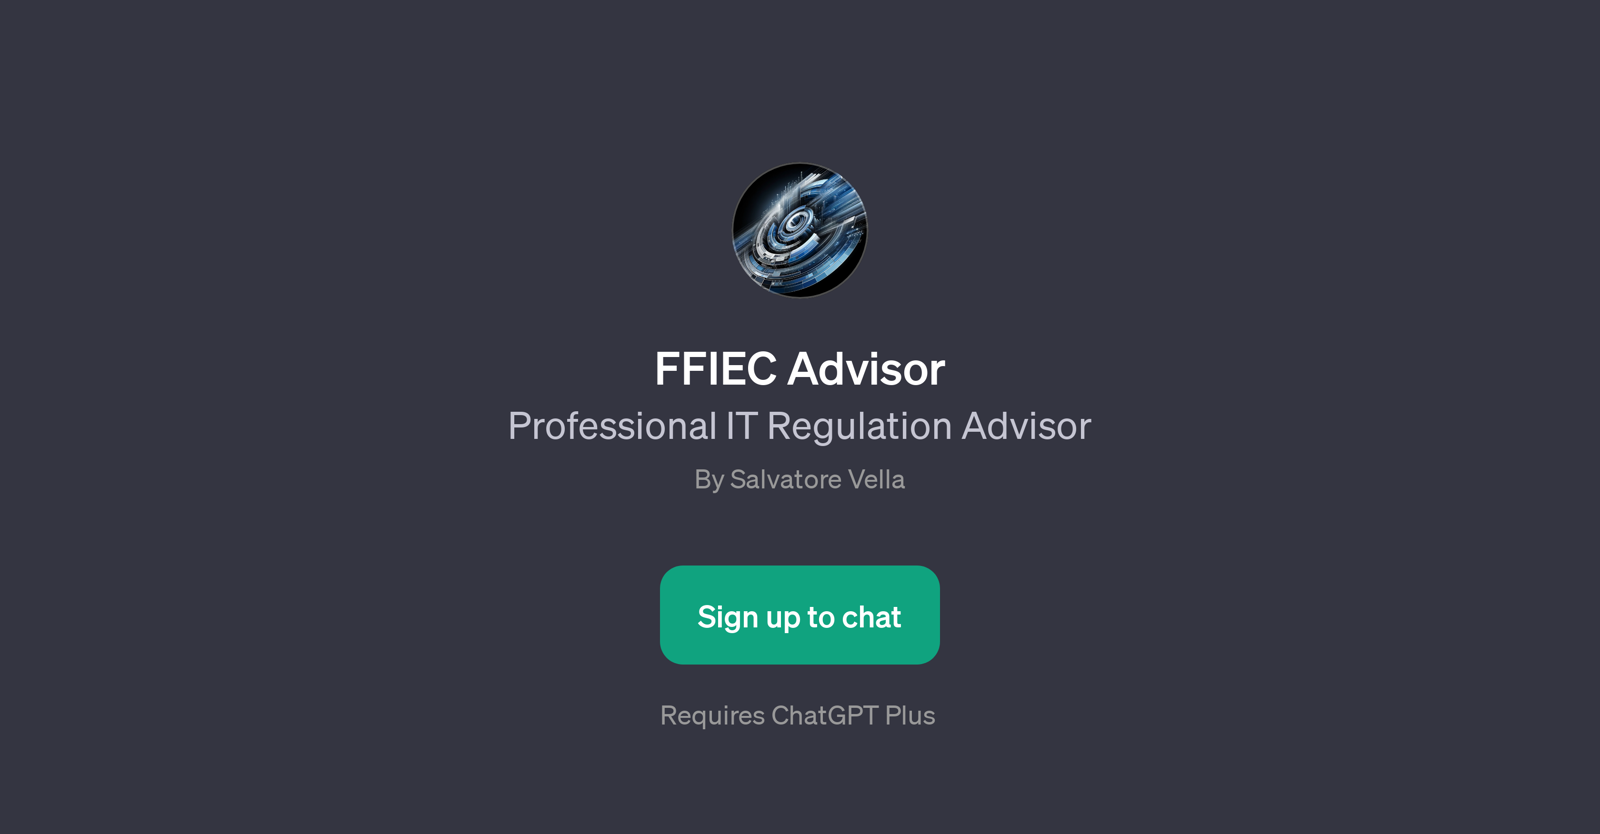 FFIEC Advisor website